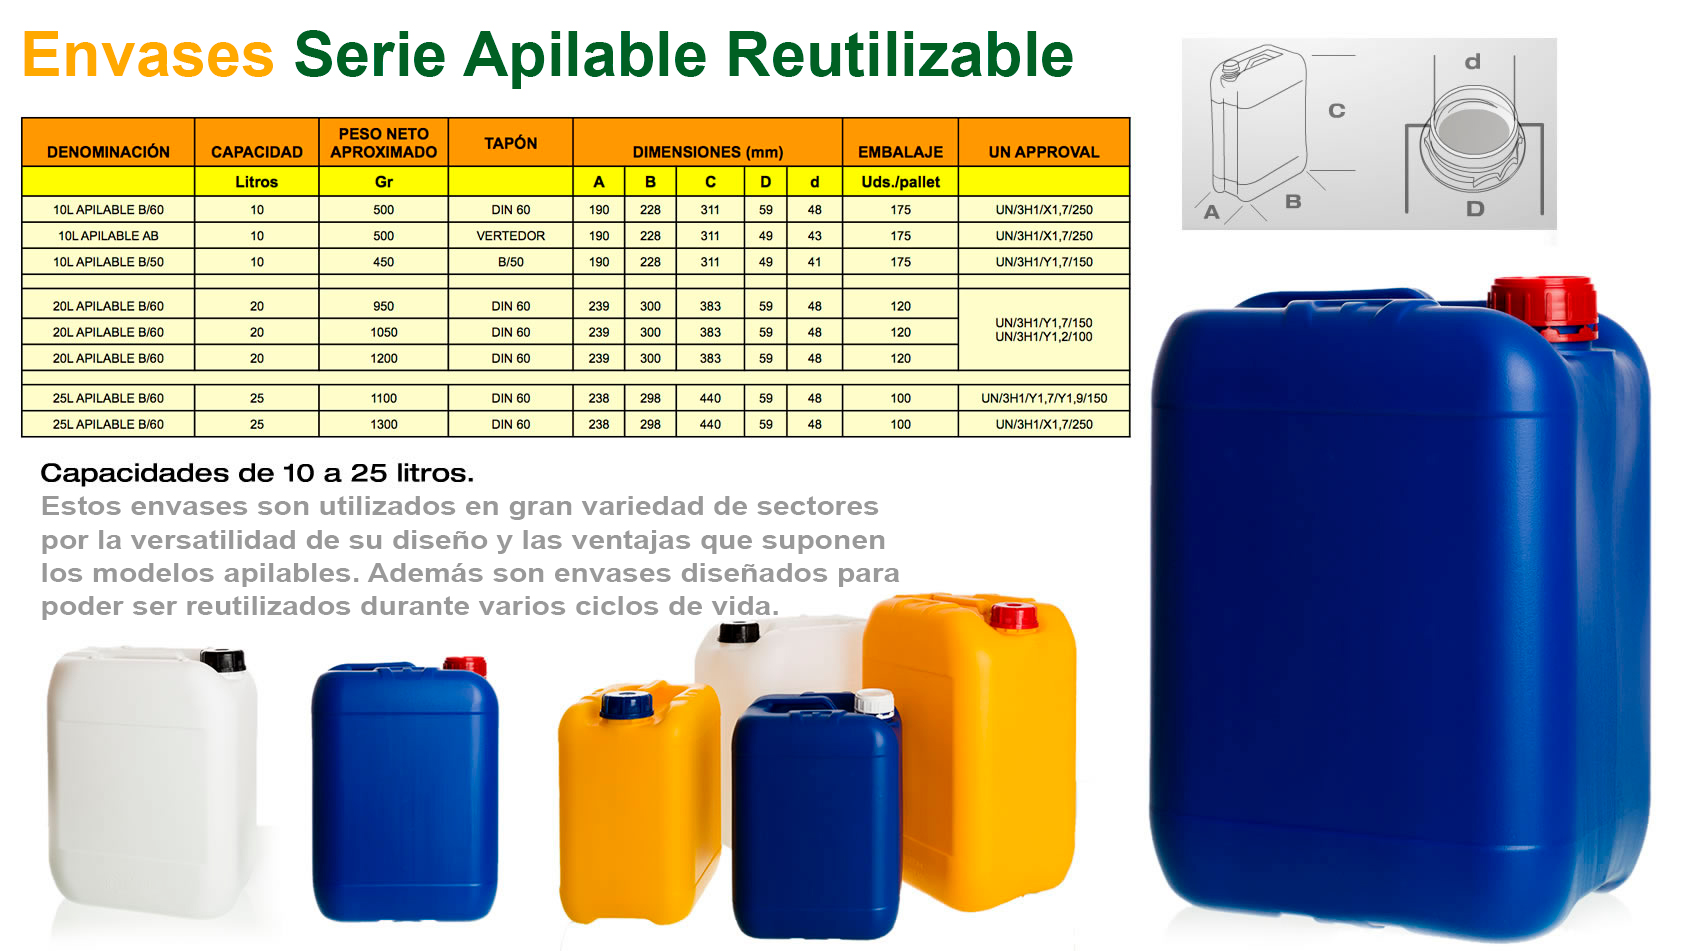 Serie Apilable Reutilizables